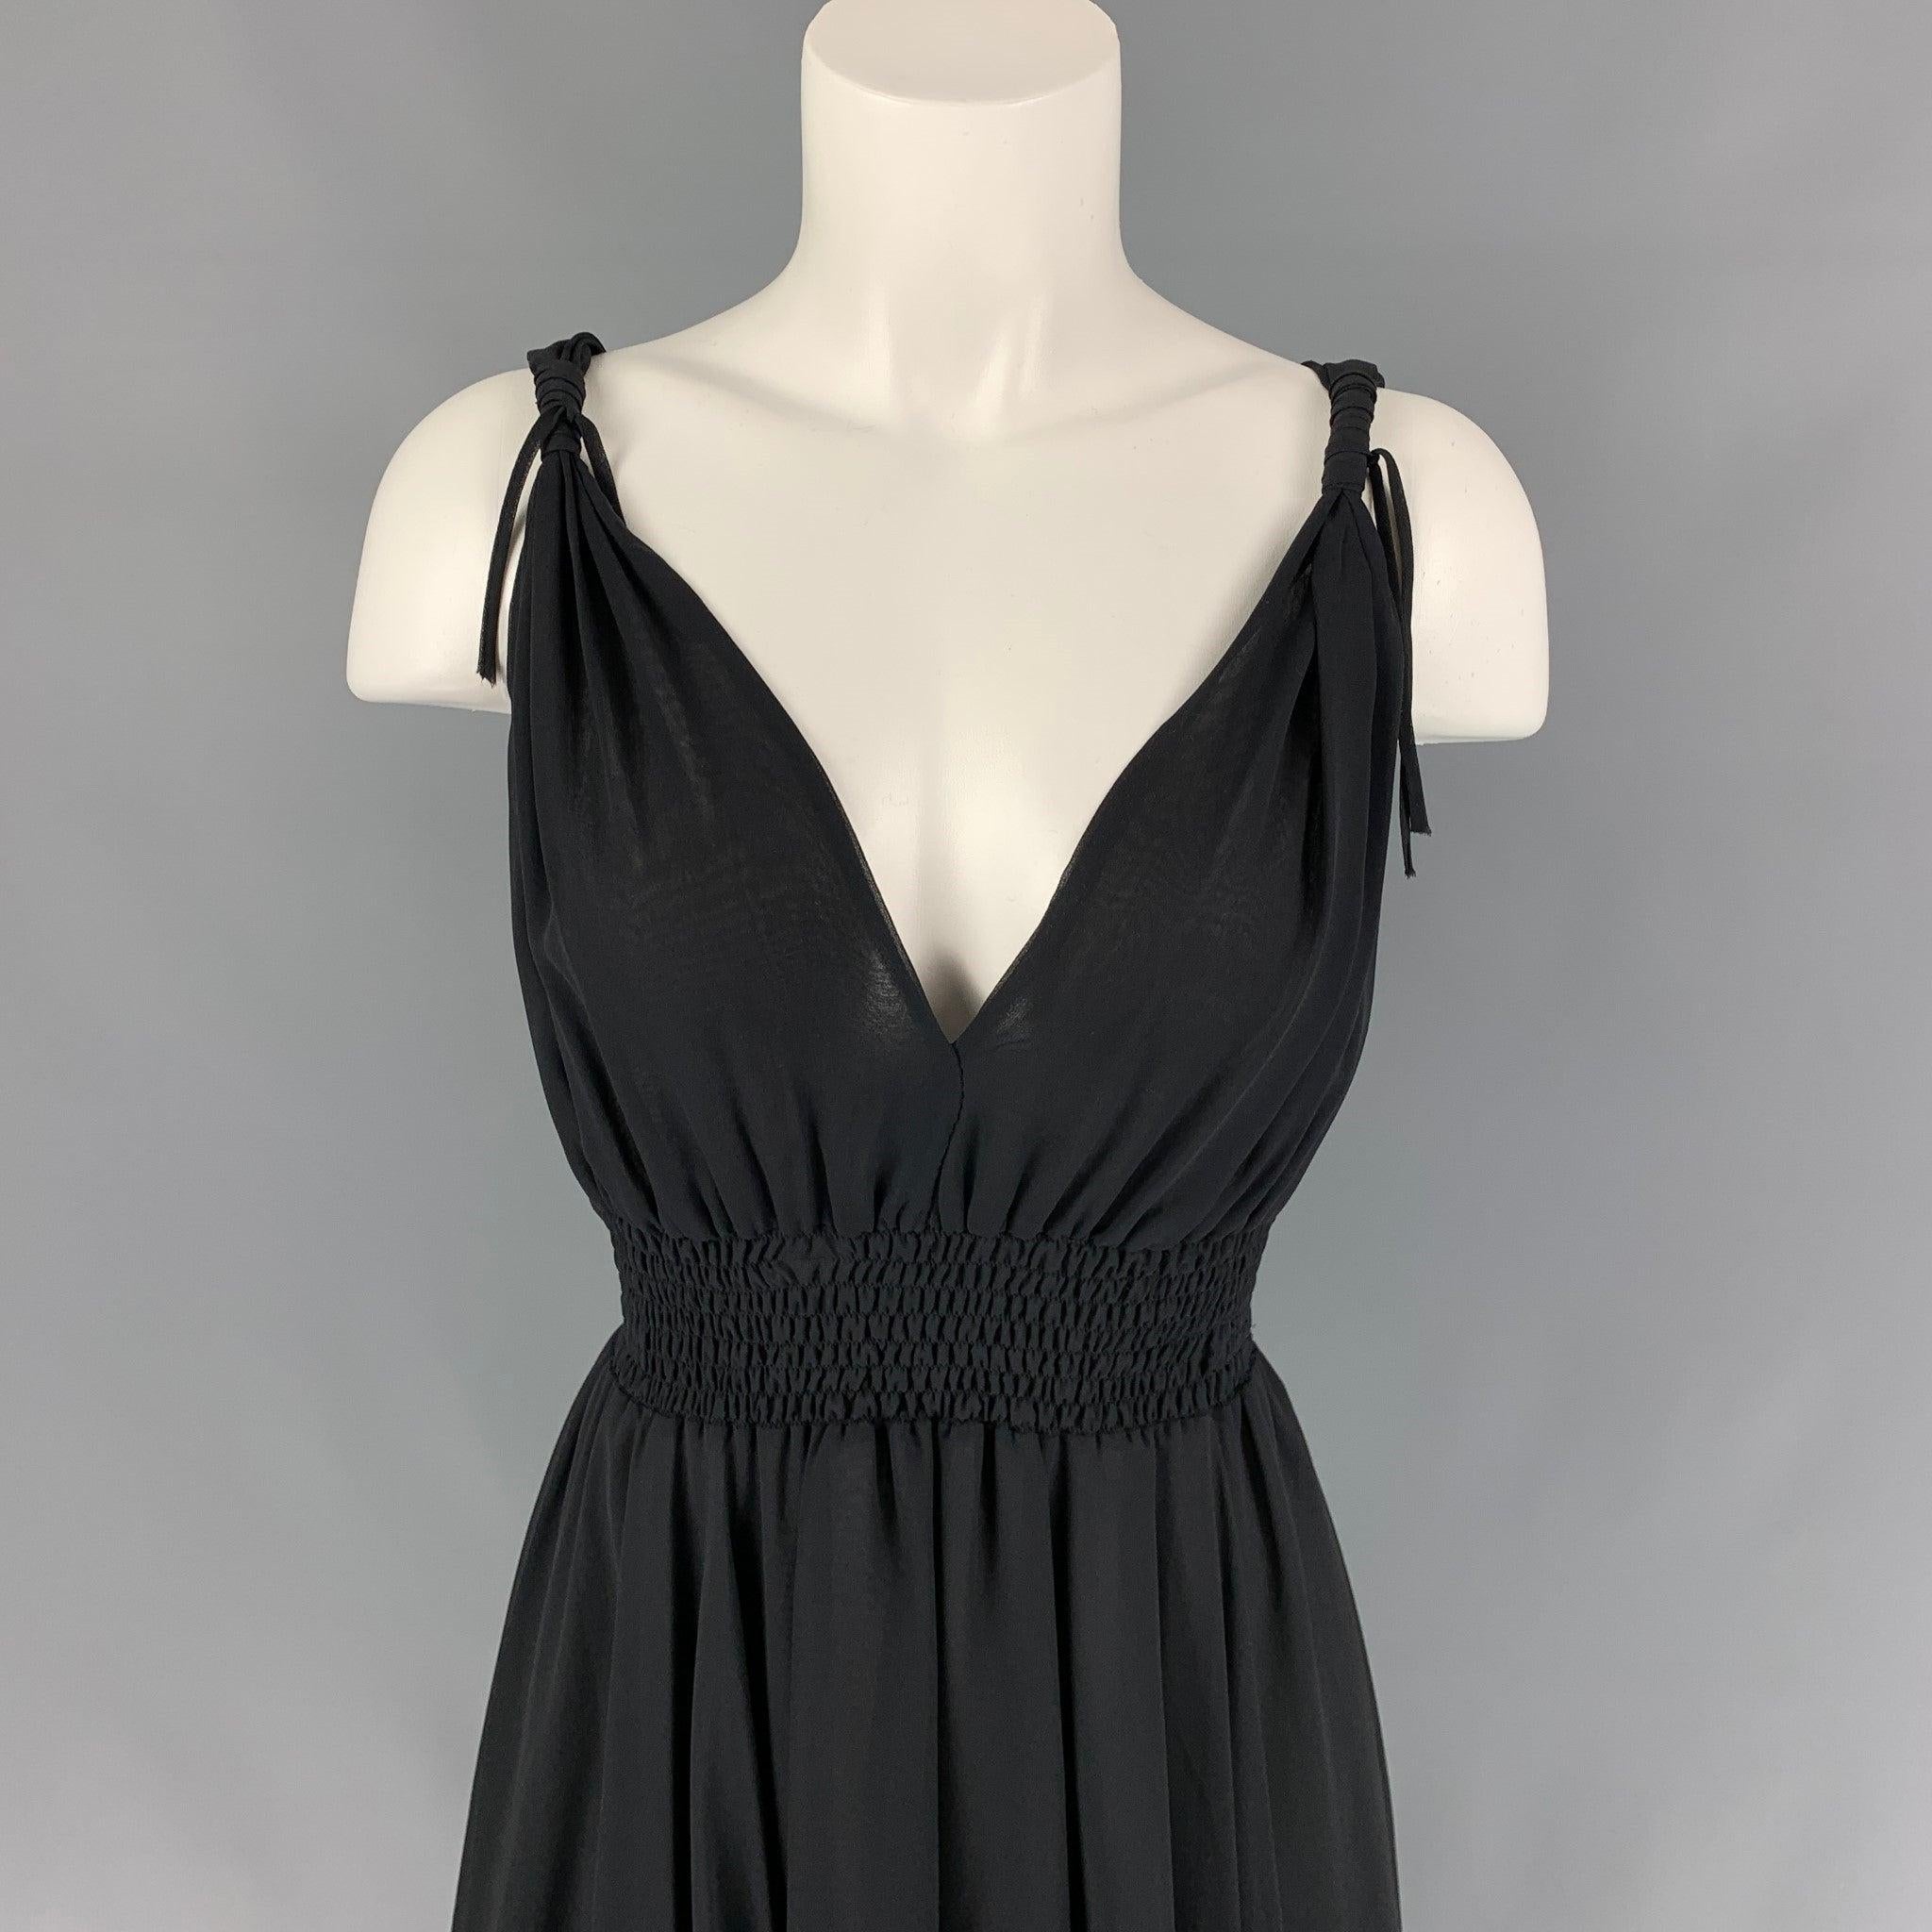 Das Kleid von JOHN RICHMOND ist aus schwarzem Chiffon gefertigt und verfügt über einen A-Linien-Stil, eine elastische Taille und geknotete Träger.
Sehr gut
Gebrauchtes Zustand. Stoffetikett entfernt. 

Markiert:   Größenetikett entfernt. 